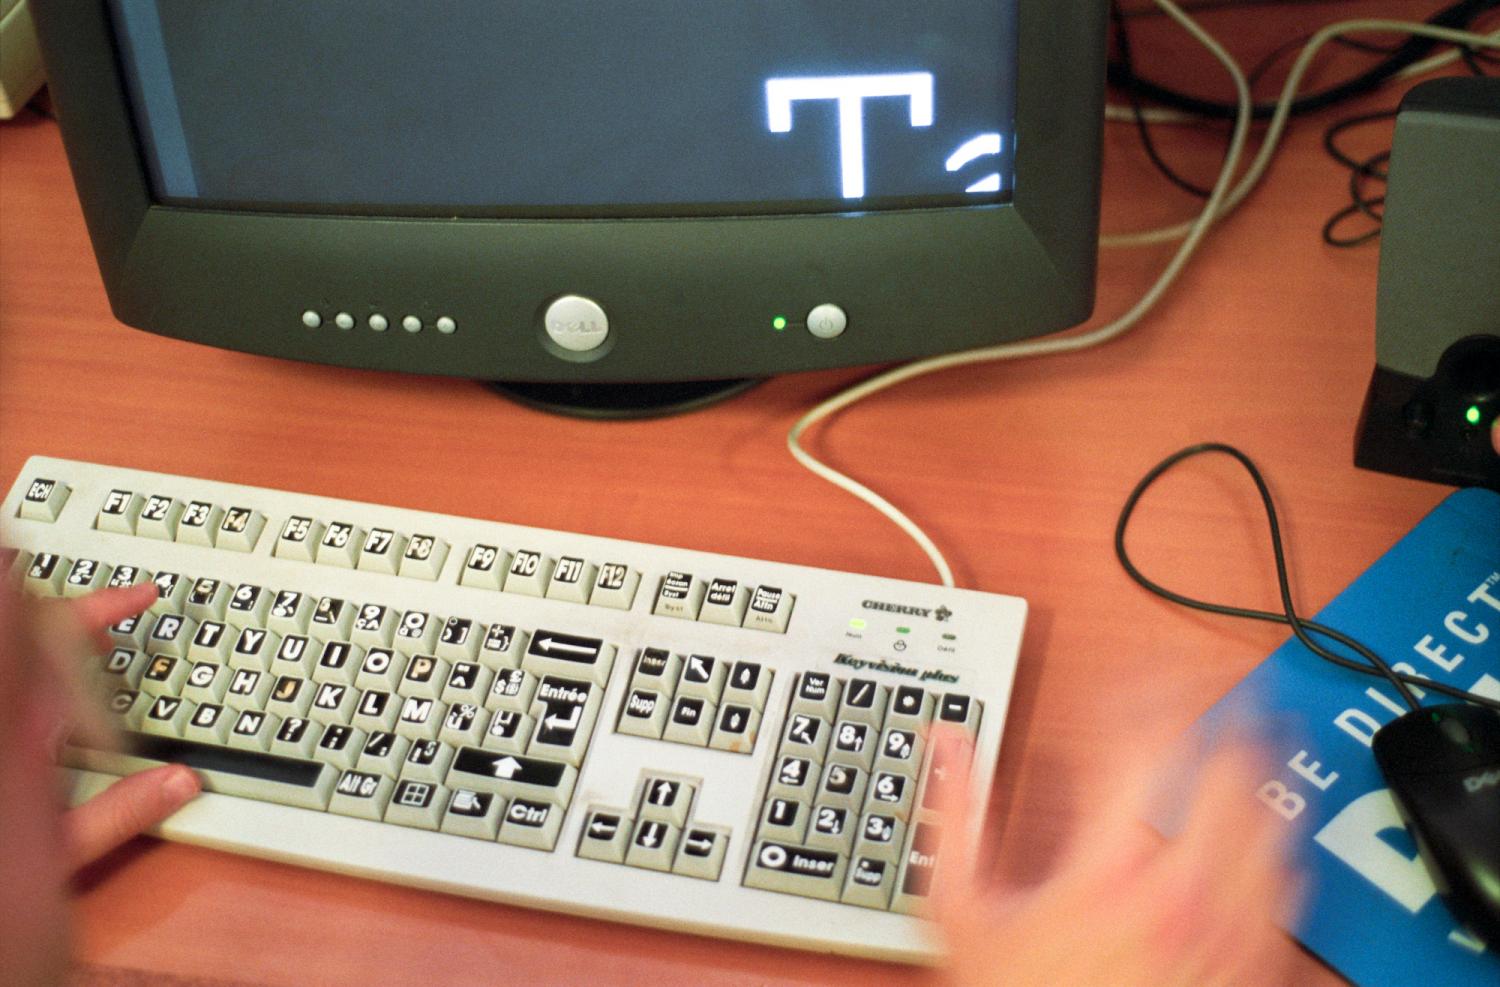 Un écran où l'on aperçoit une très grande lettre blanche sur fond noir, un clavier où les lettres sont écrites en gras sur les touches, et les mains d'un utilisateur : c'est un ordinateur adapté pour les malvoyants. Paris, octobre 2005.